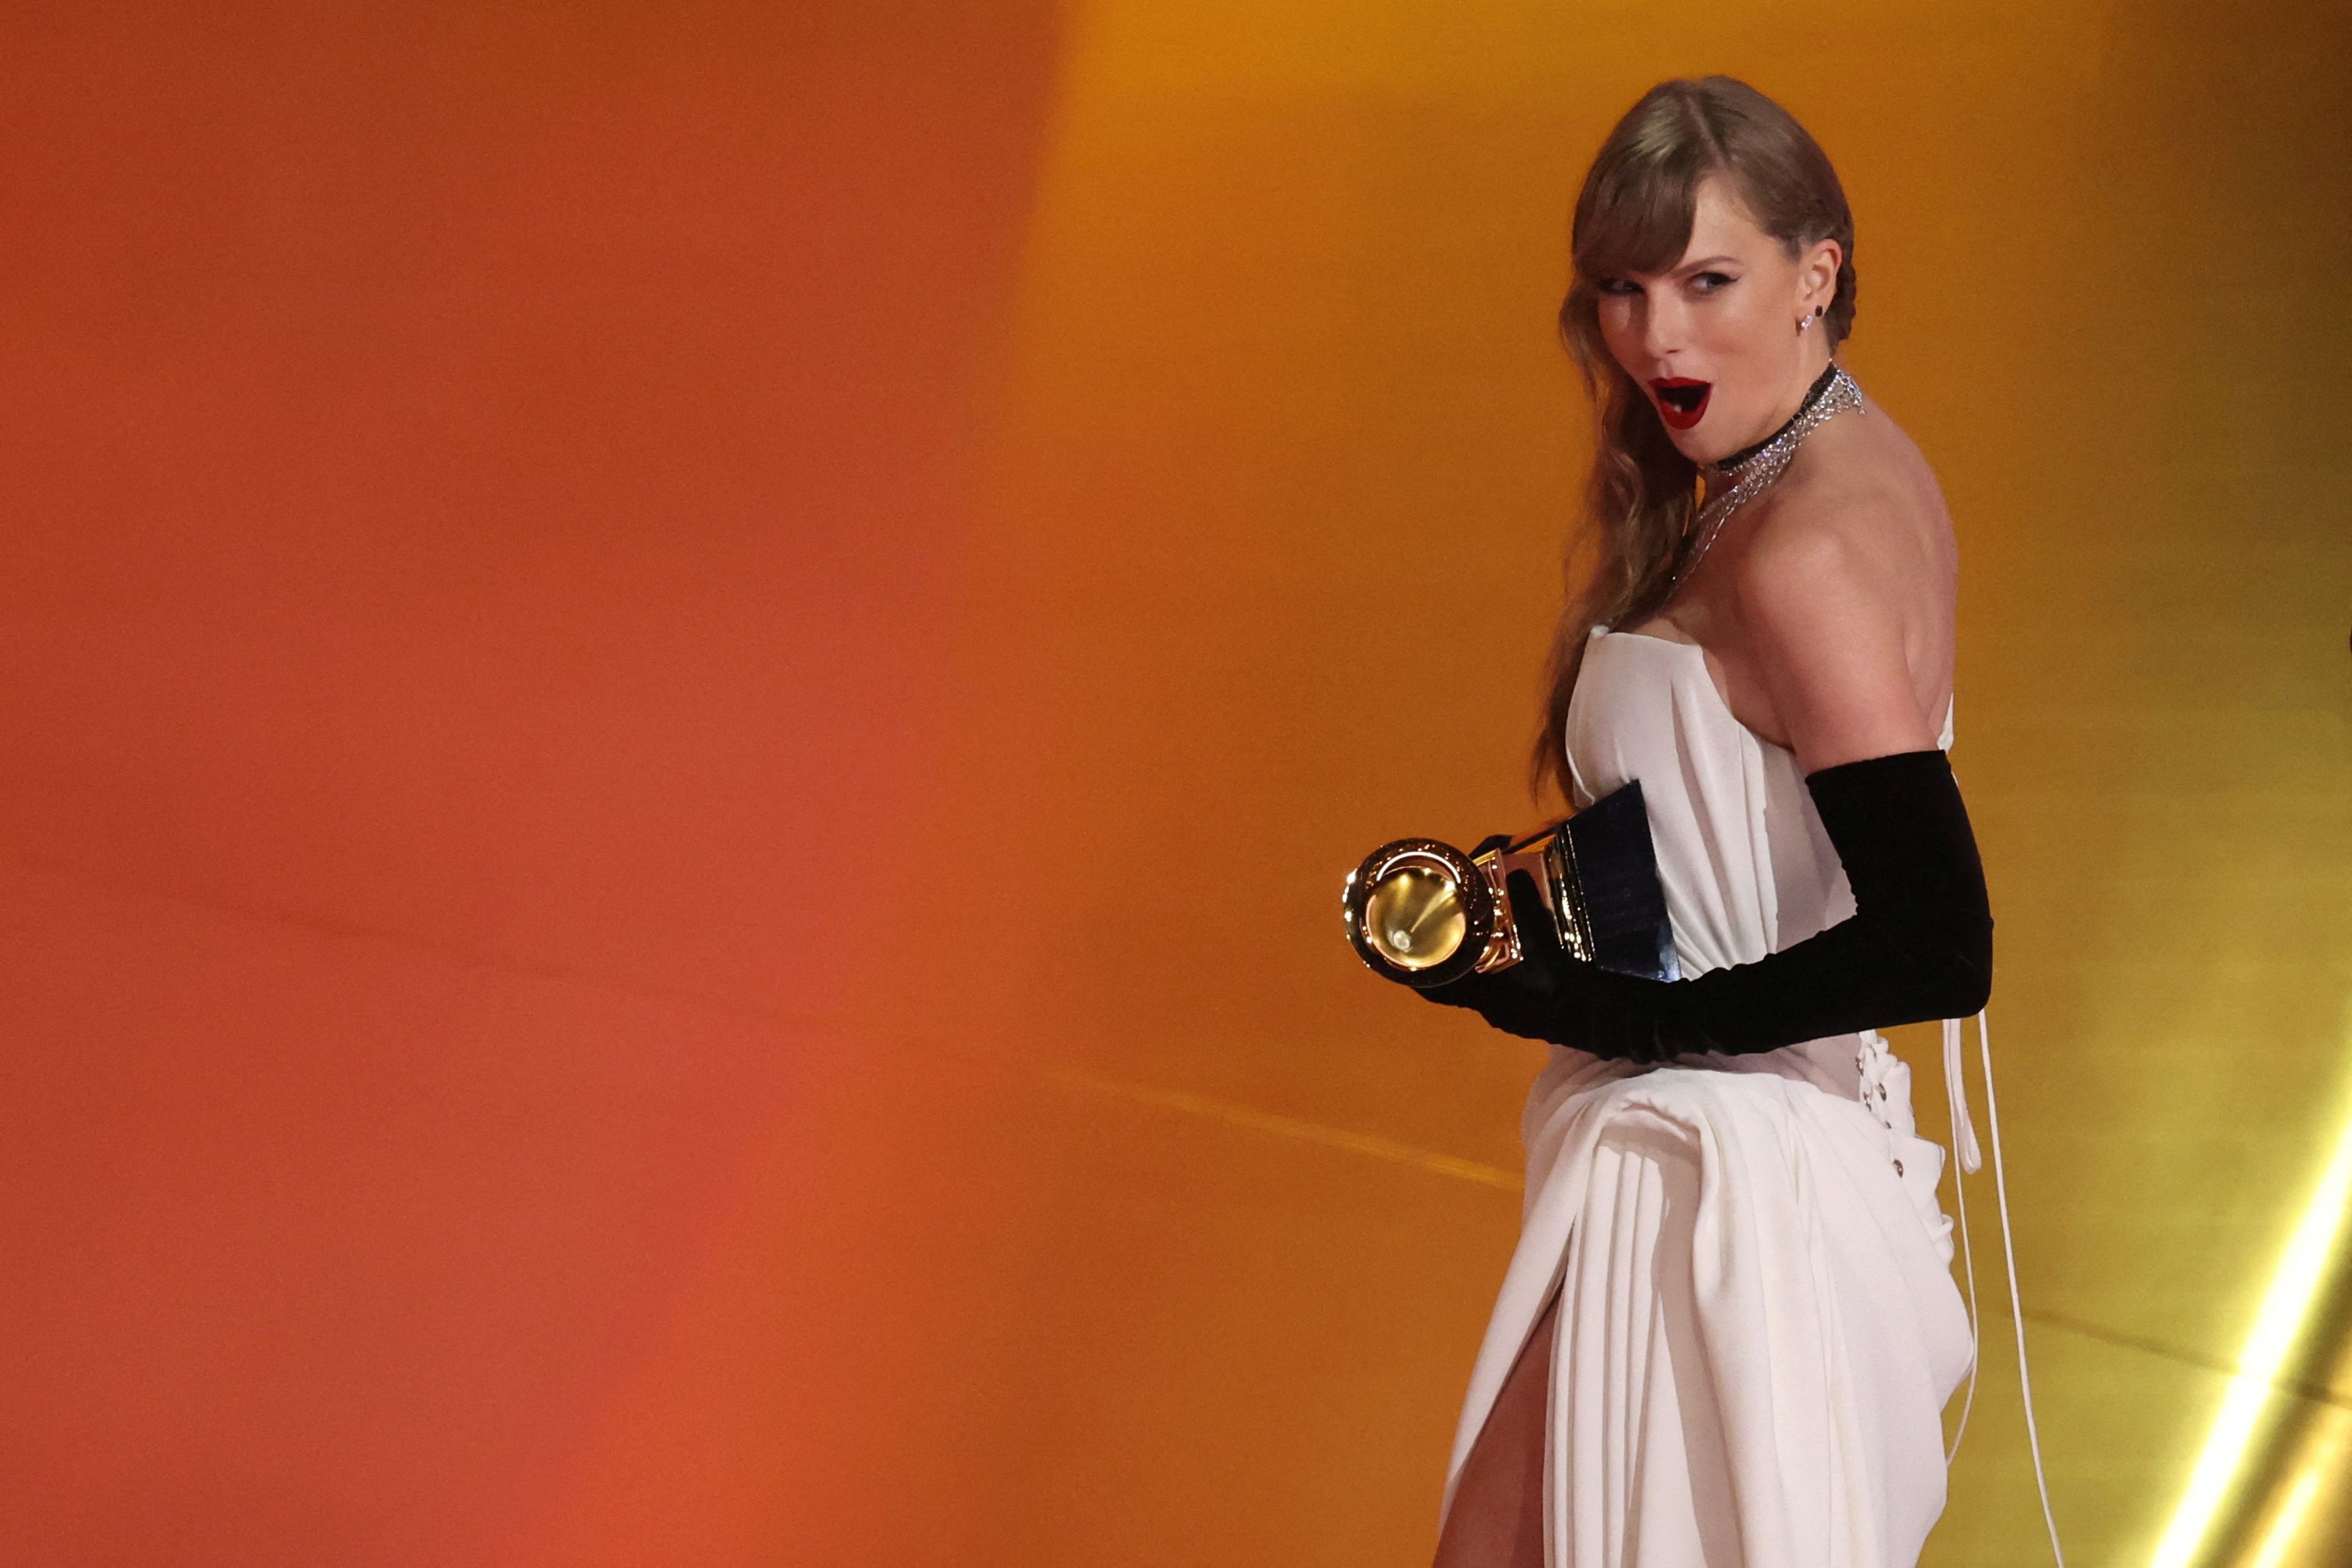 La foto del día: Taylor Swift hizo historia anoche en los Grammy al lograr su cuarto premio a Álbum del año, superando a mitos de la música como Frank Sinatra o Stevie Wonder.